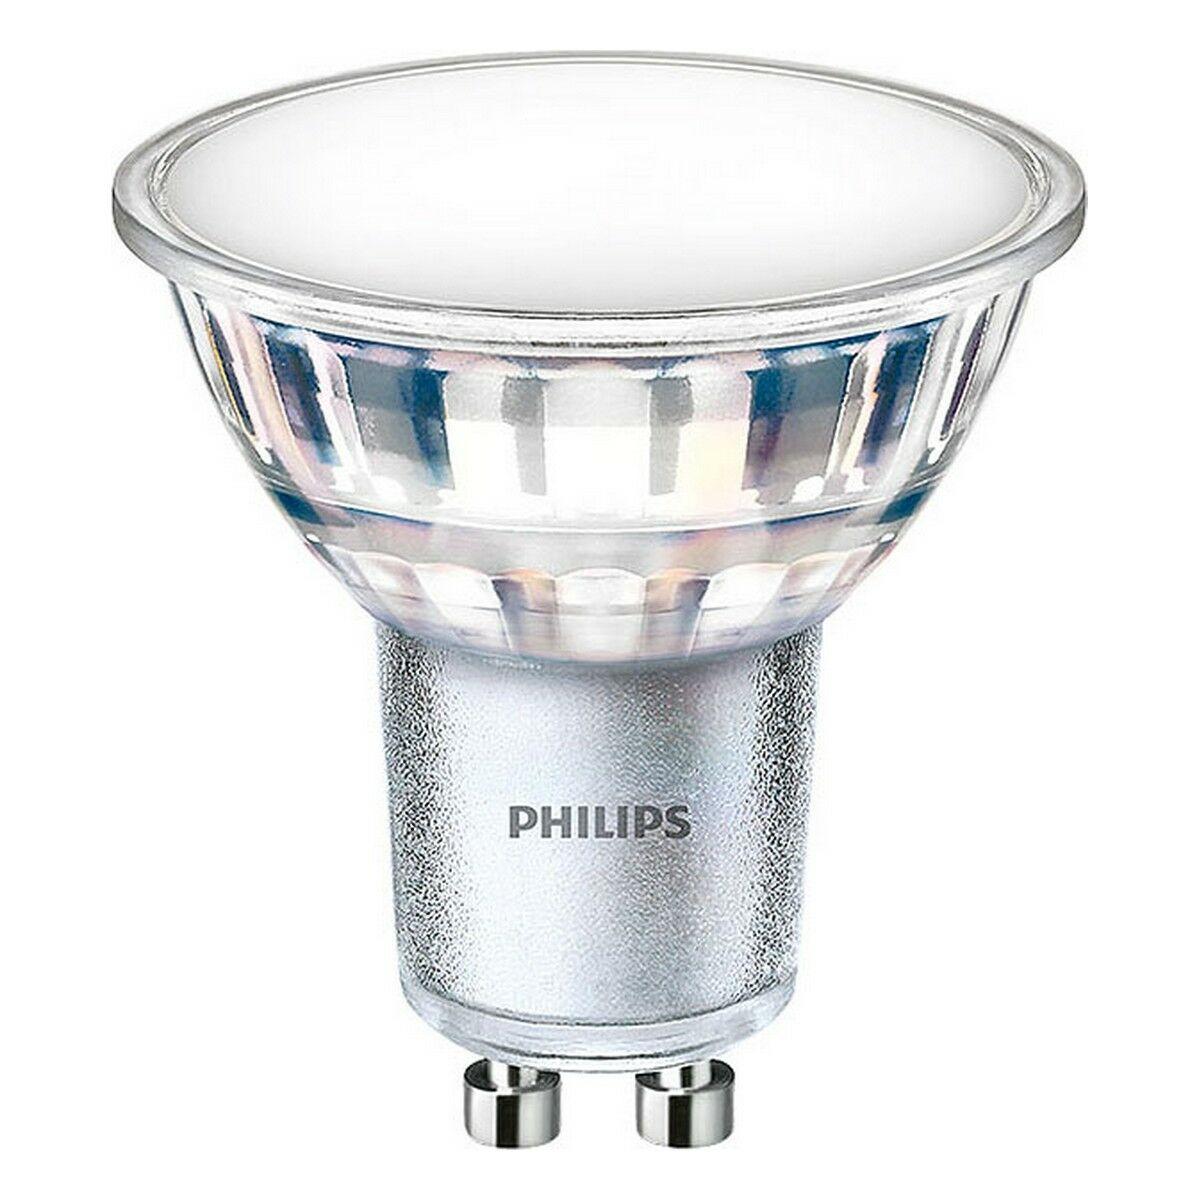 Billede af LED-lampe Philips 4,9 W GU10 550 lm (6500 K) hos Boligcenter.dk